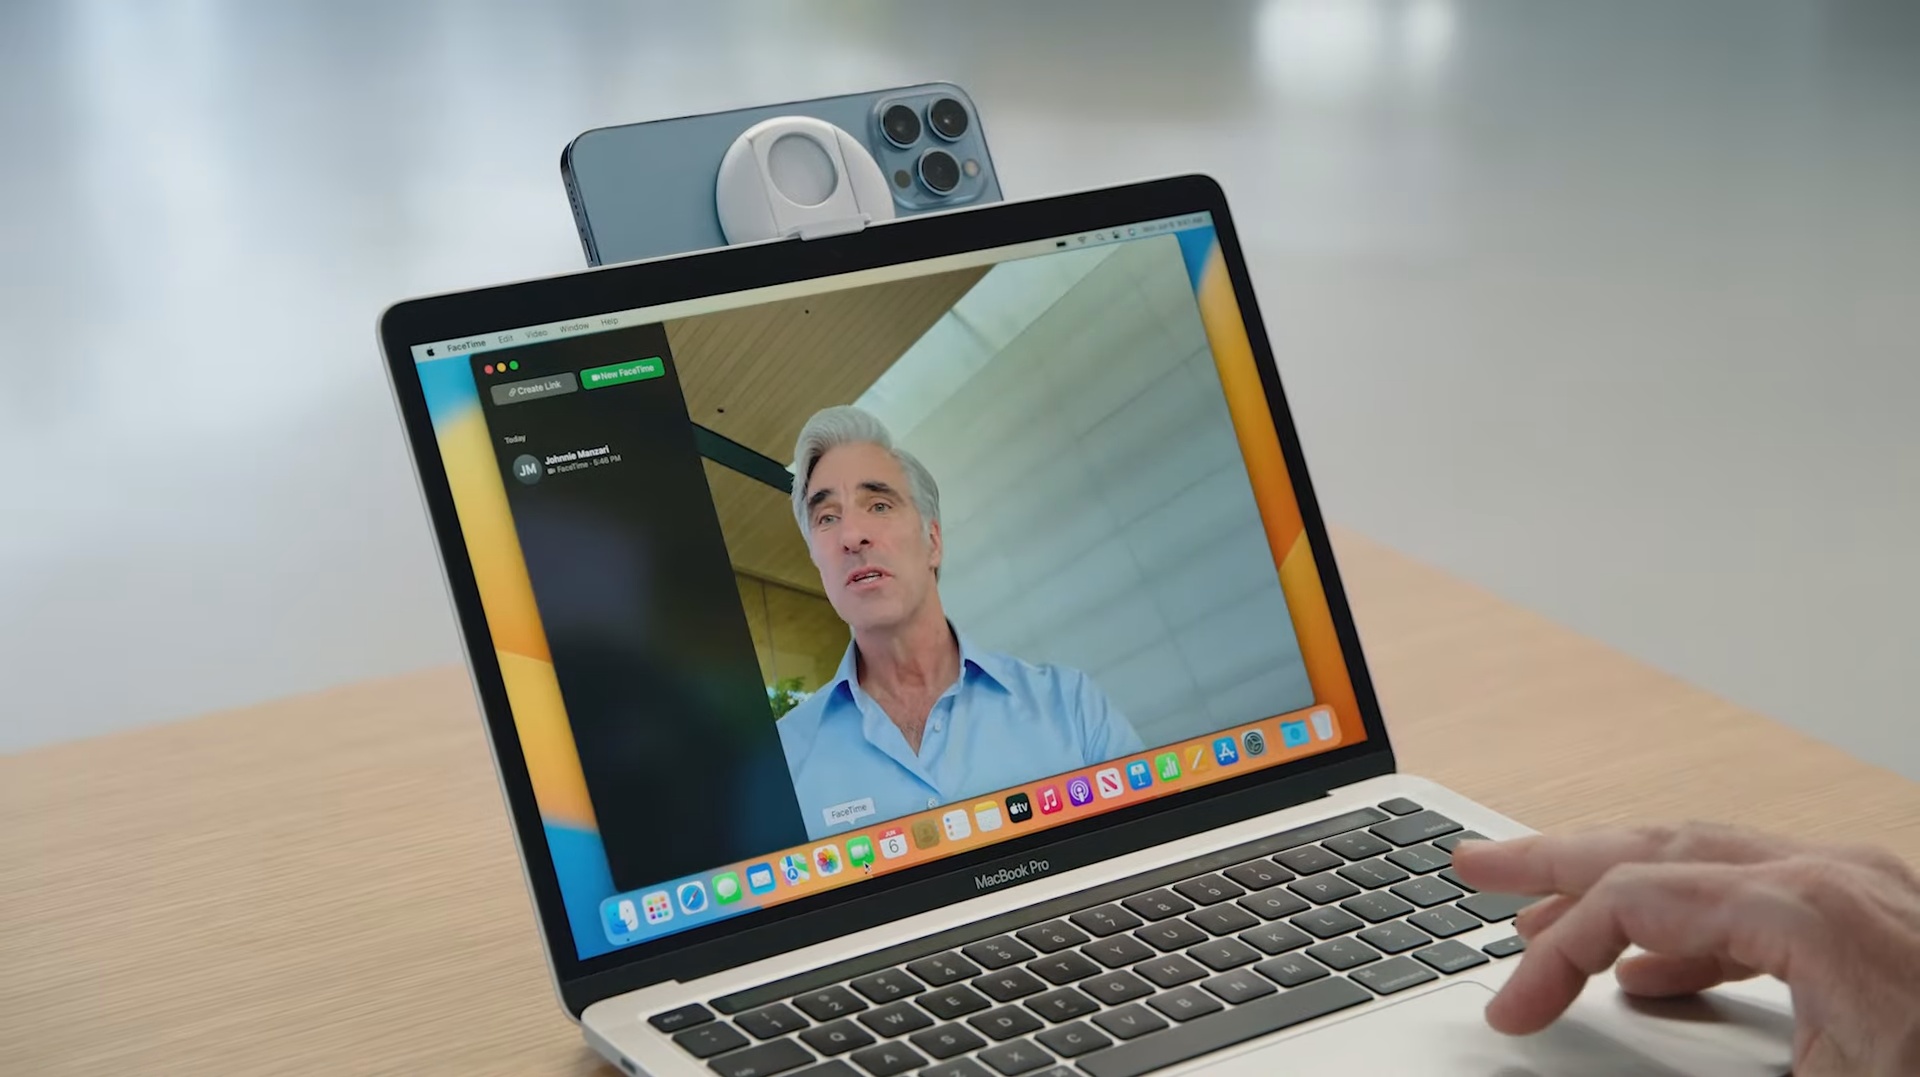 Craig Federighi de Apple usando un iPhone como cámara web con Continuinty Camera en macOS Ventura.